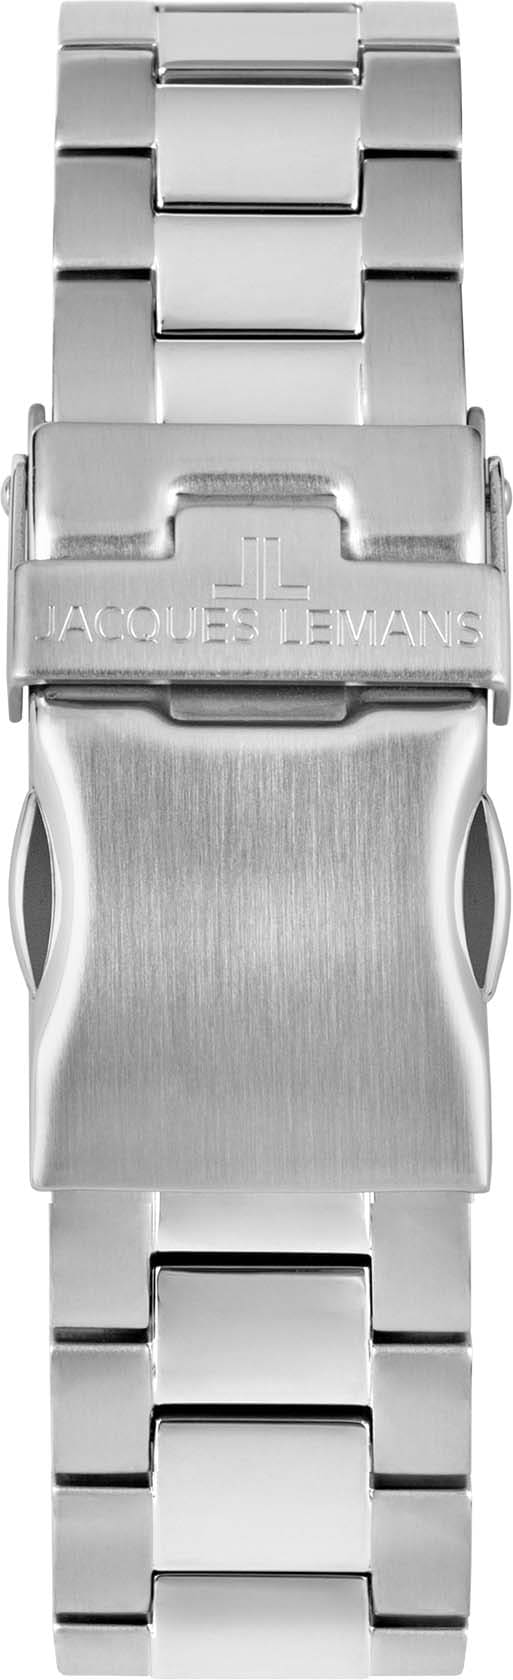 Jacques Lemans Multifunktionsuhr »42-11E« | Quarzuhren